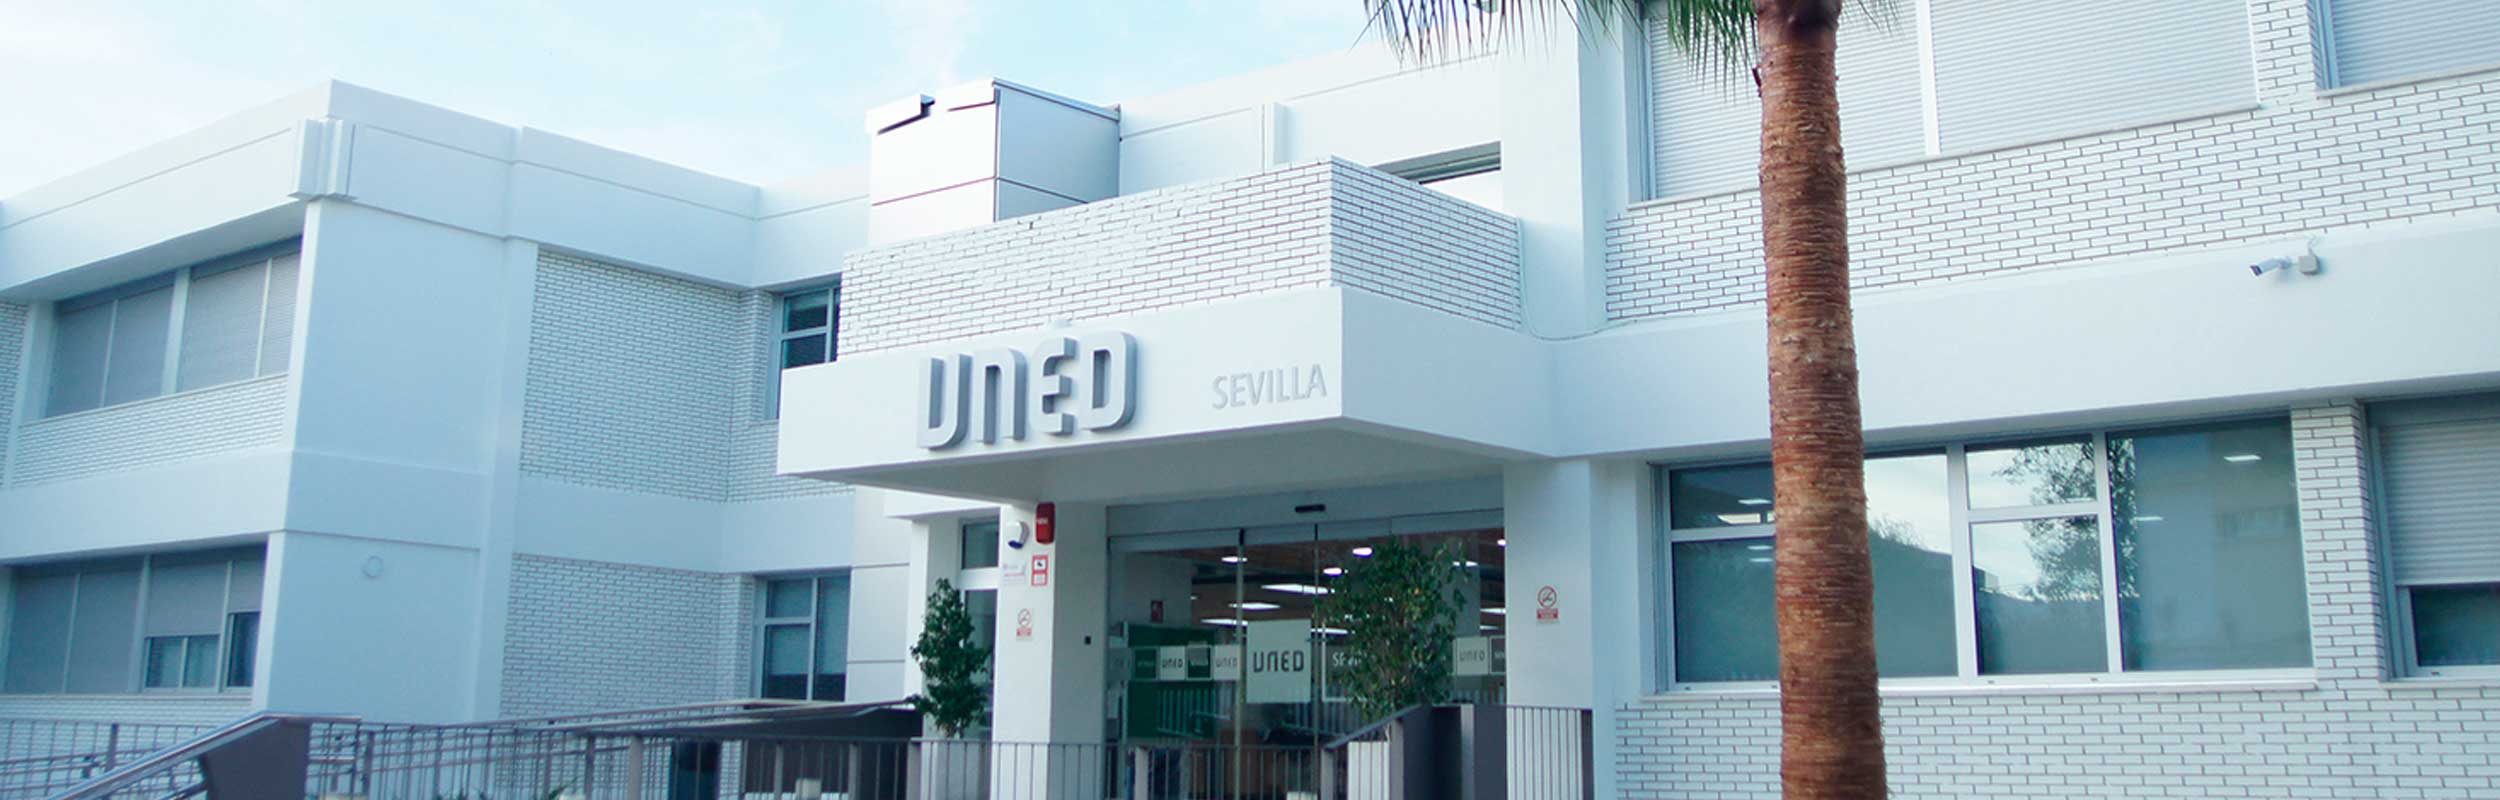 Alumni del Centro Asociado de Sevilla de la UNED